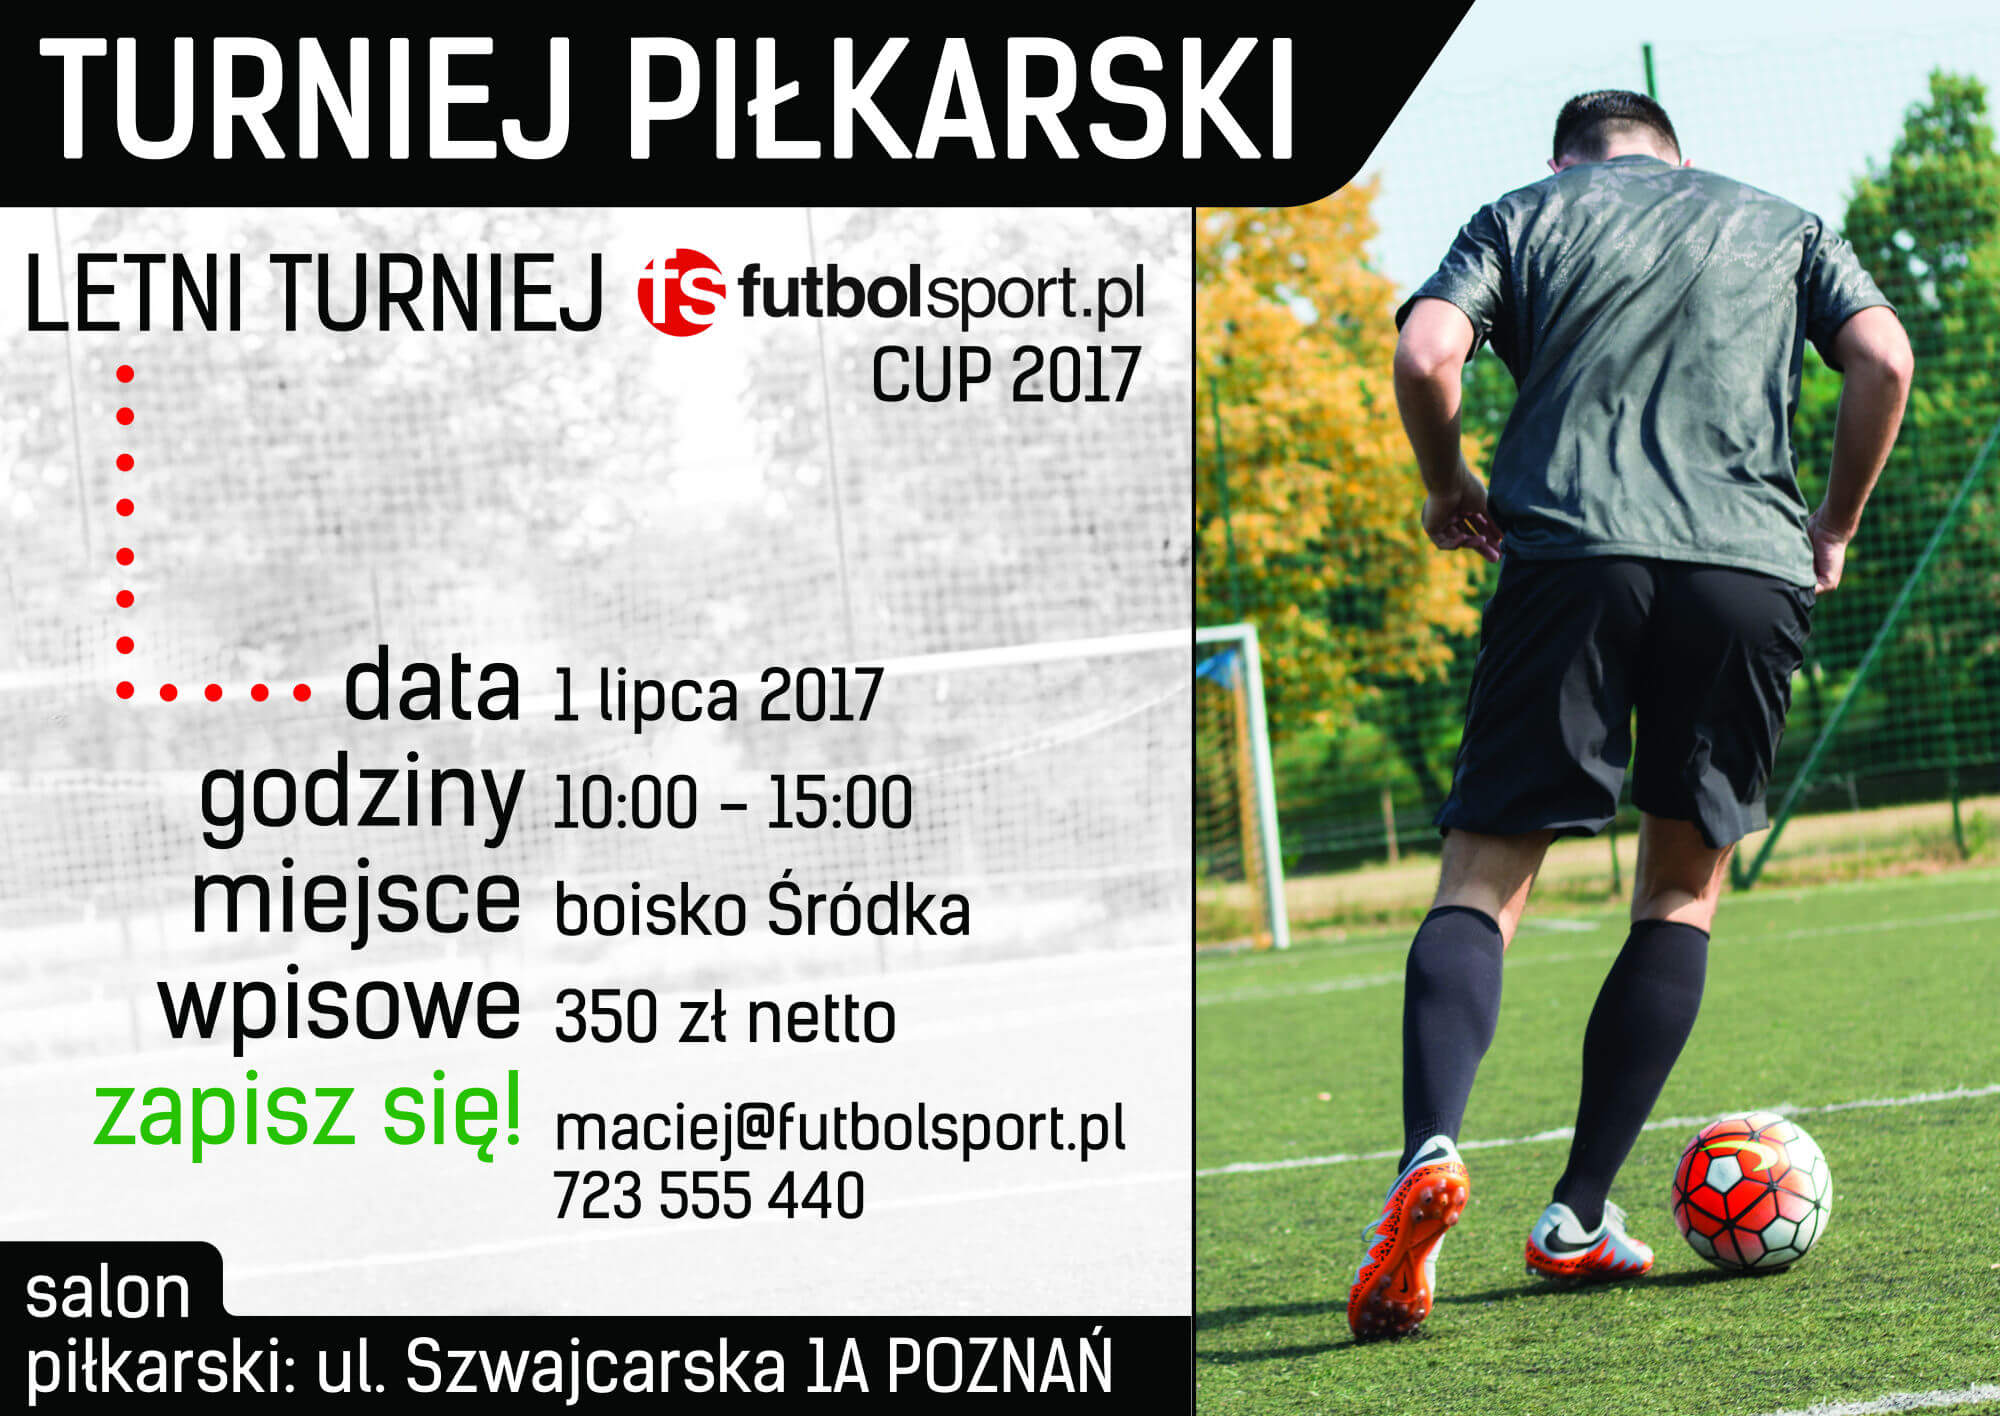 Zapraszamy do udziału w Letnim Turnieju futbolsport.pl CUP 2017